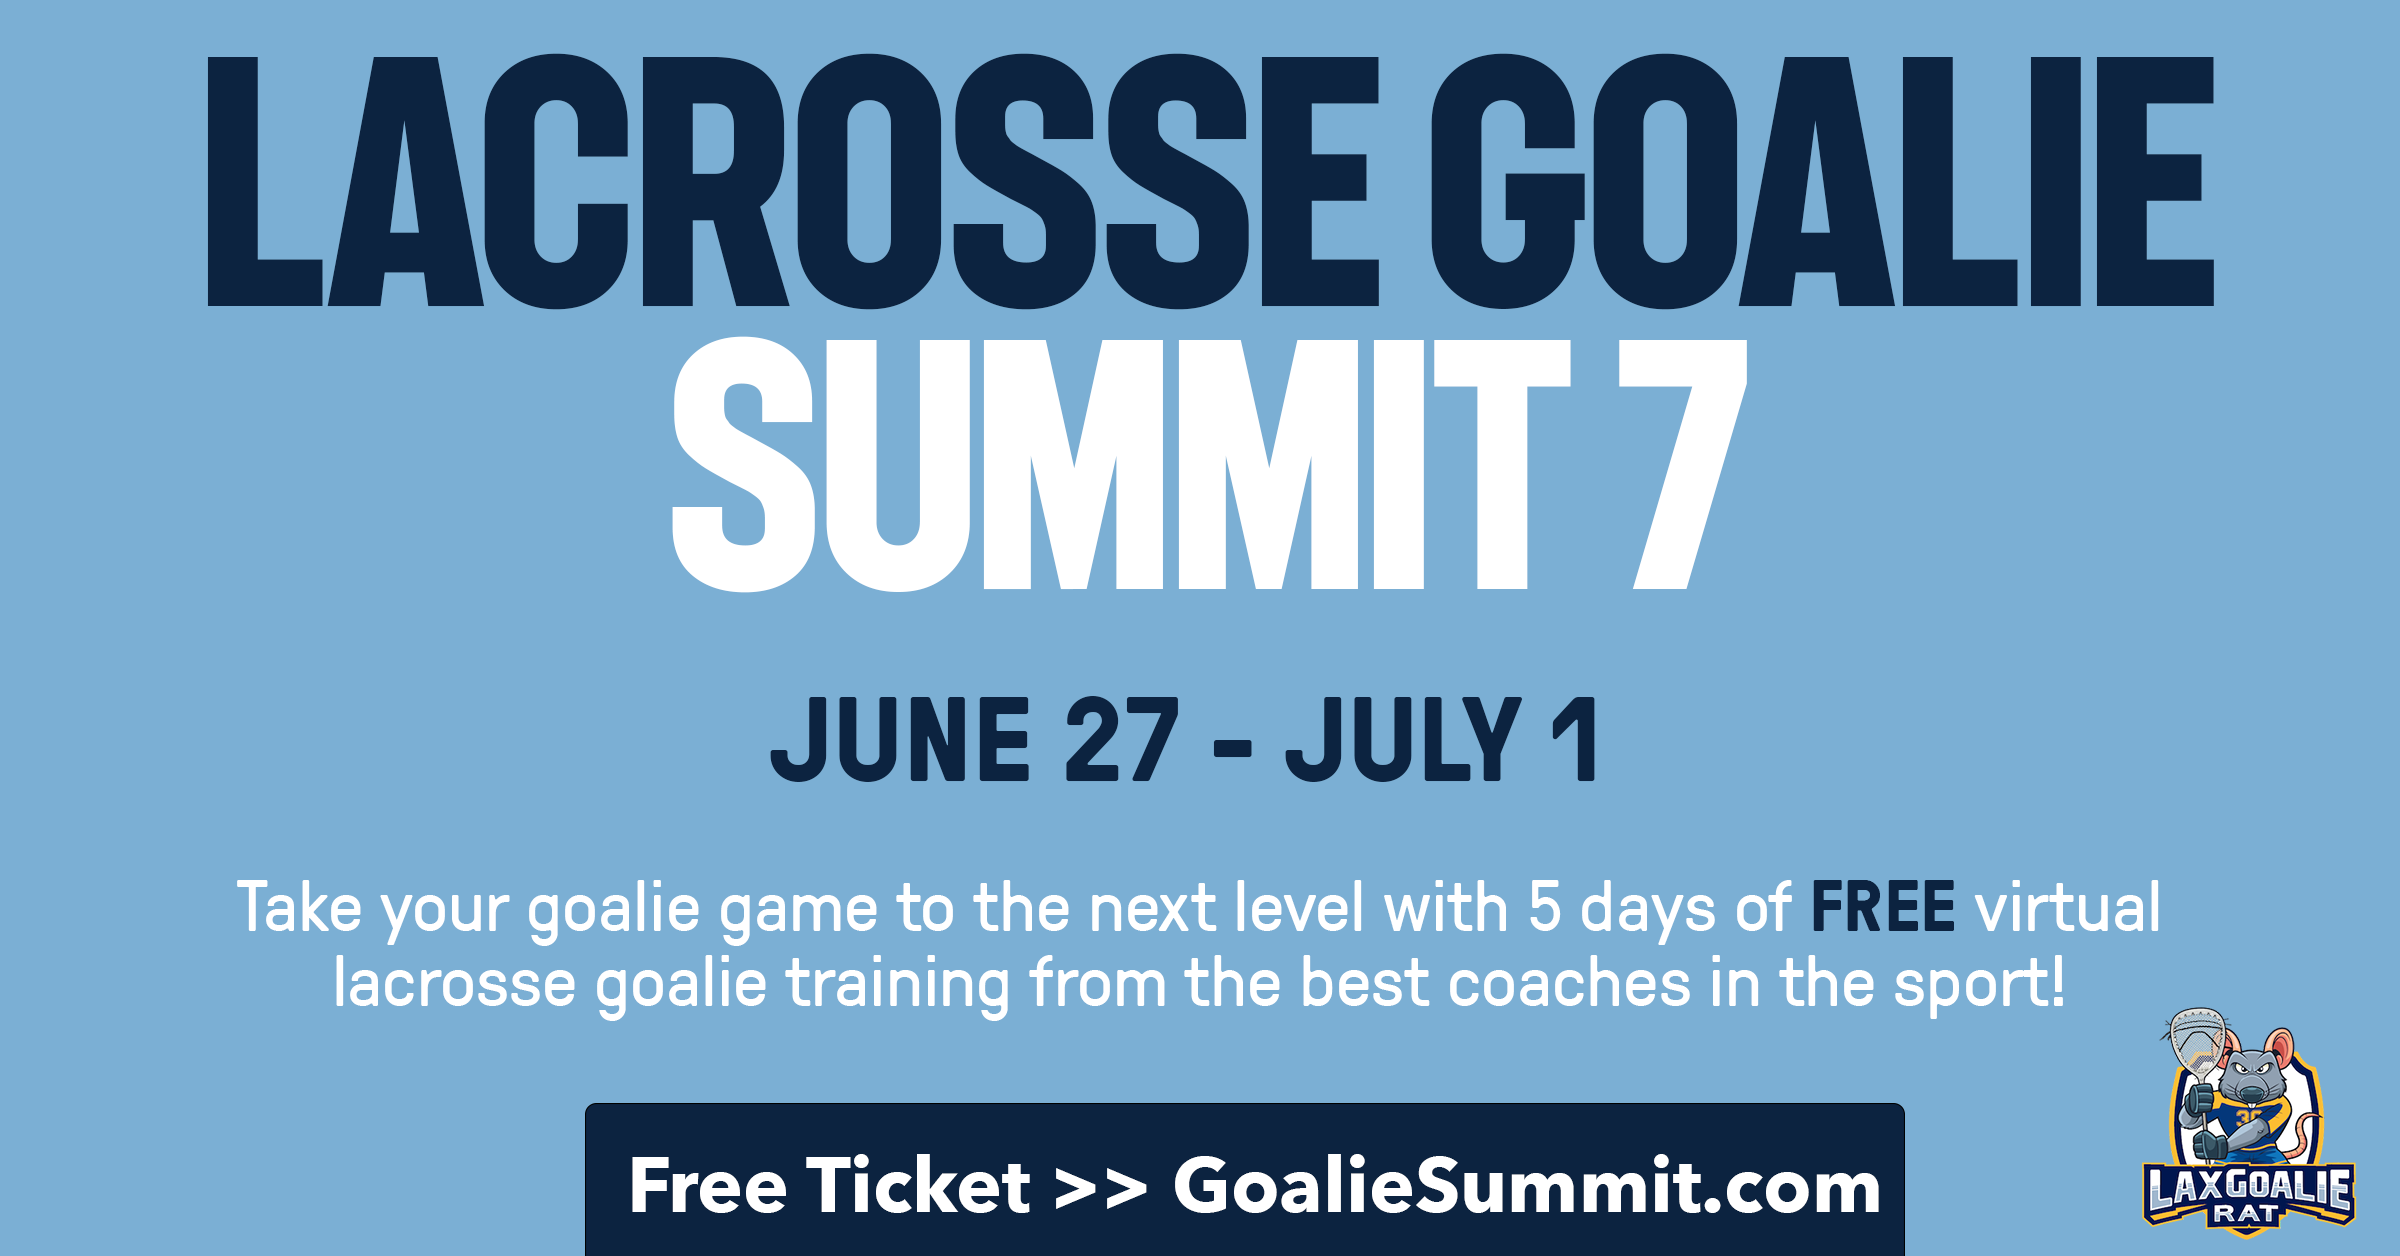 Lacrosse Goalie Summit 7